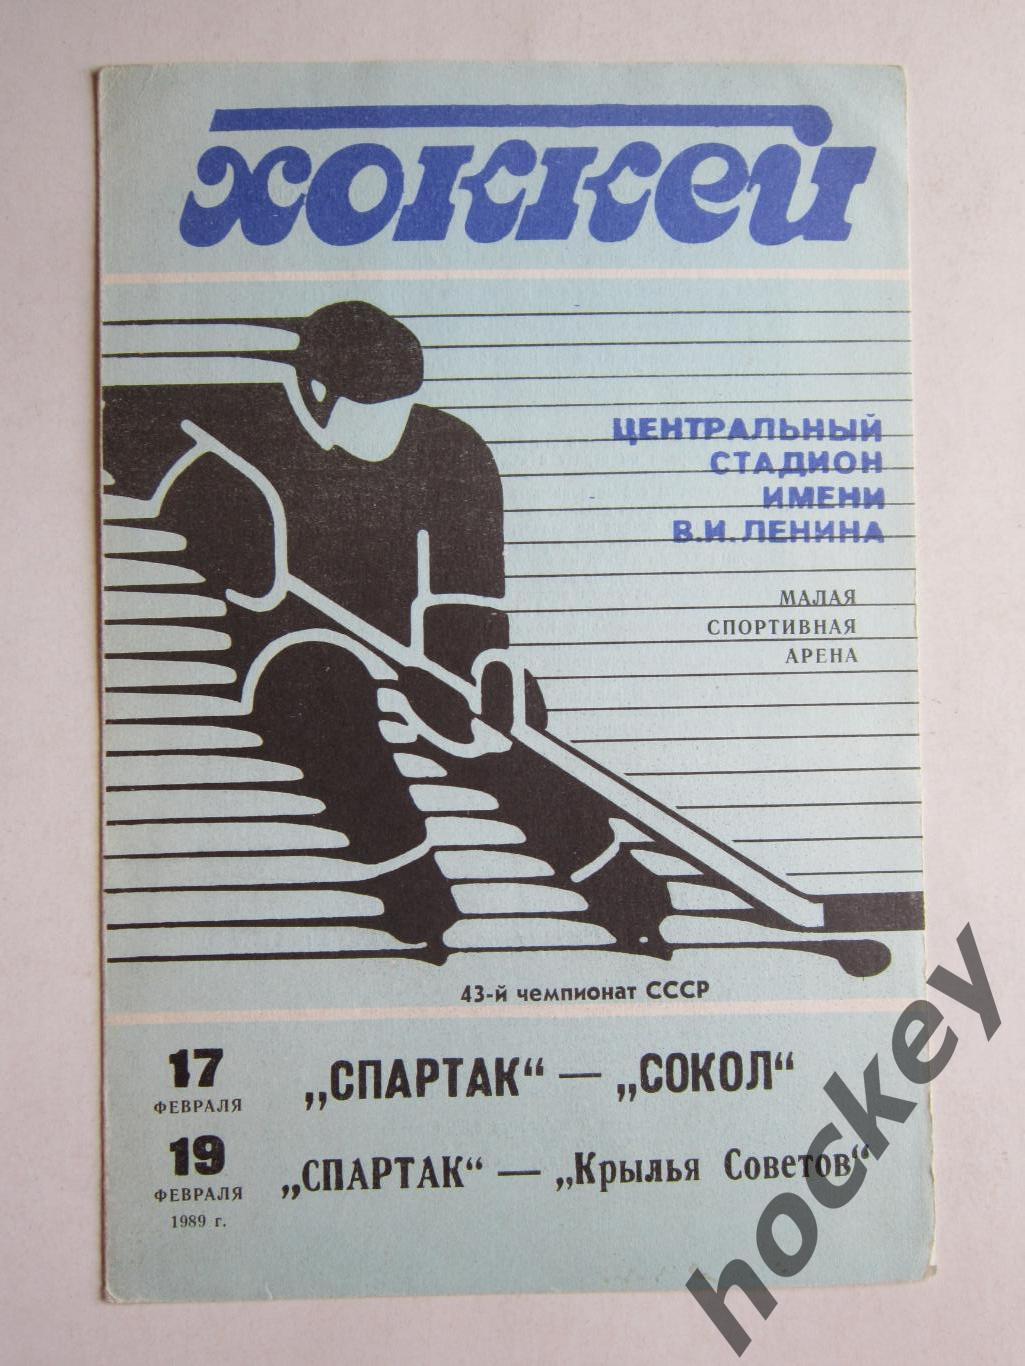 Спартак Москва - Сокол Киев, Крылья Советов Москва 17,19.02.1989